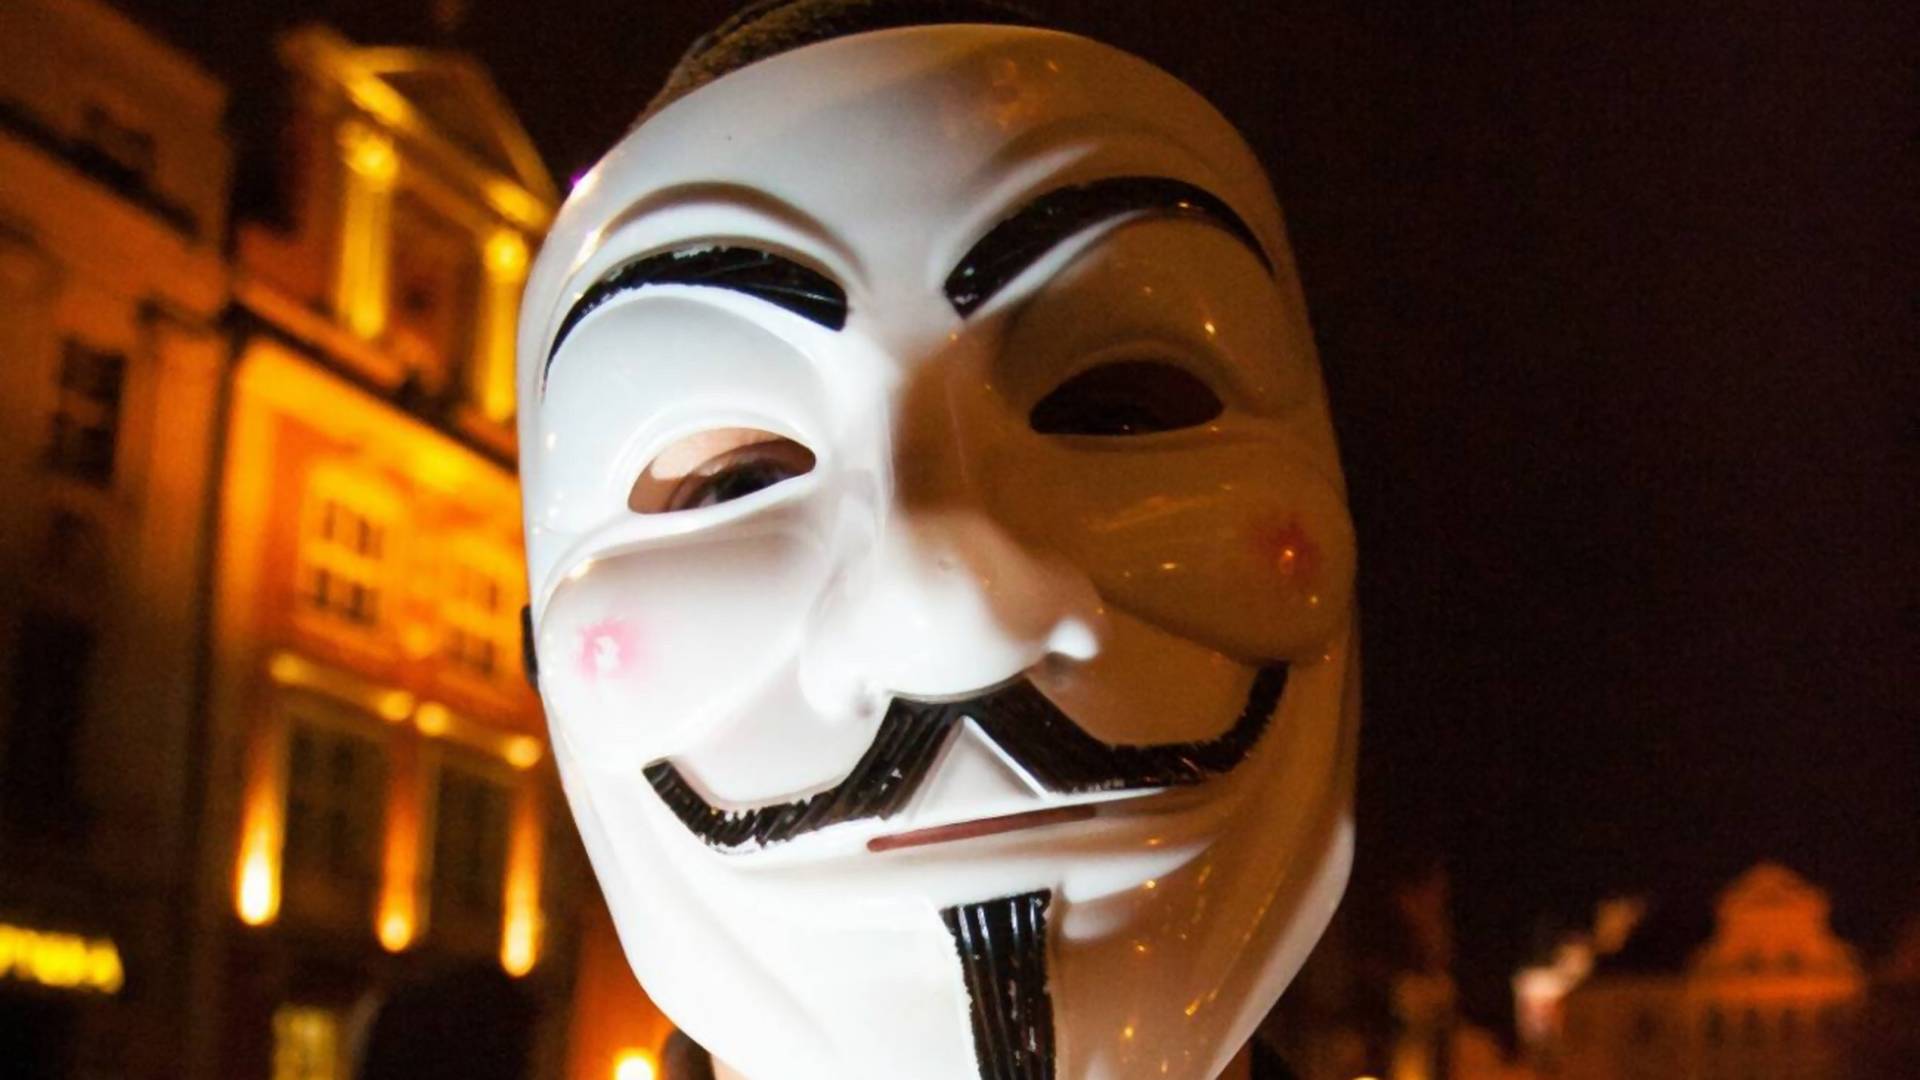 Anonymous włamali się do ponad 400 kamer w Rosji. "Putin morduje dzieci"